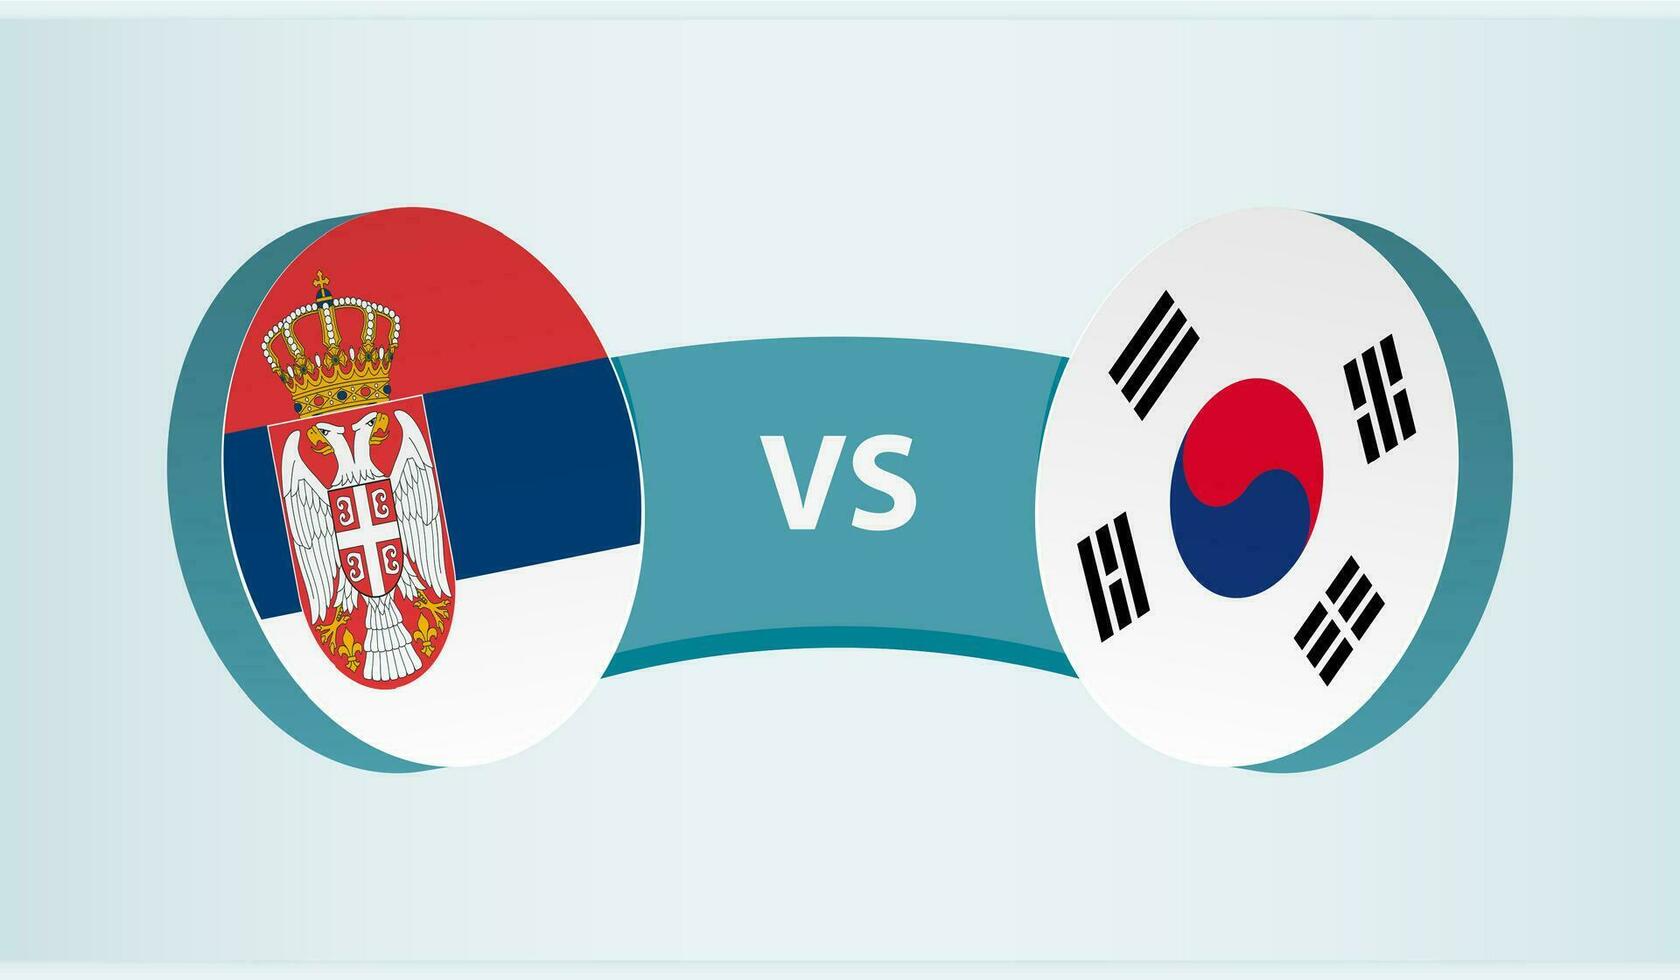 serbia mot söder korea, team sporter konkurrens begrepp. vektor